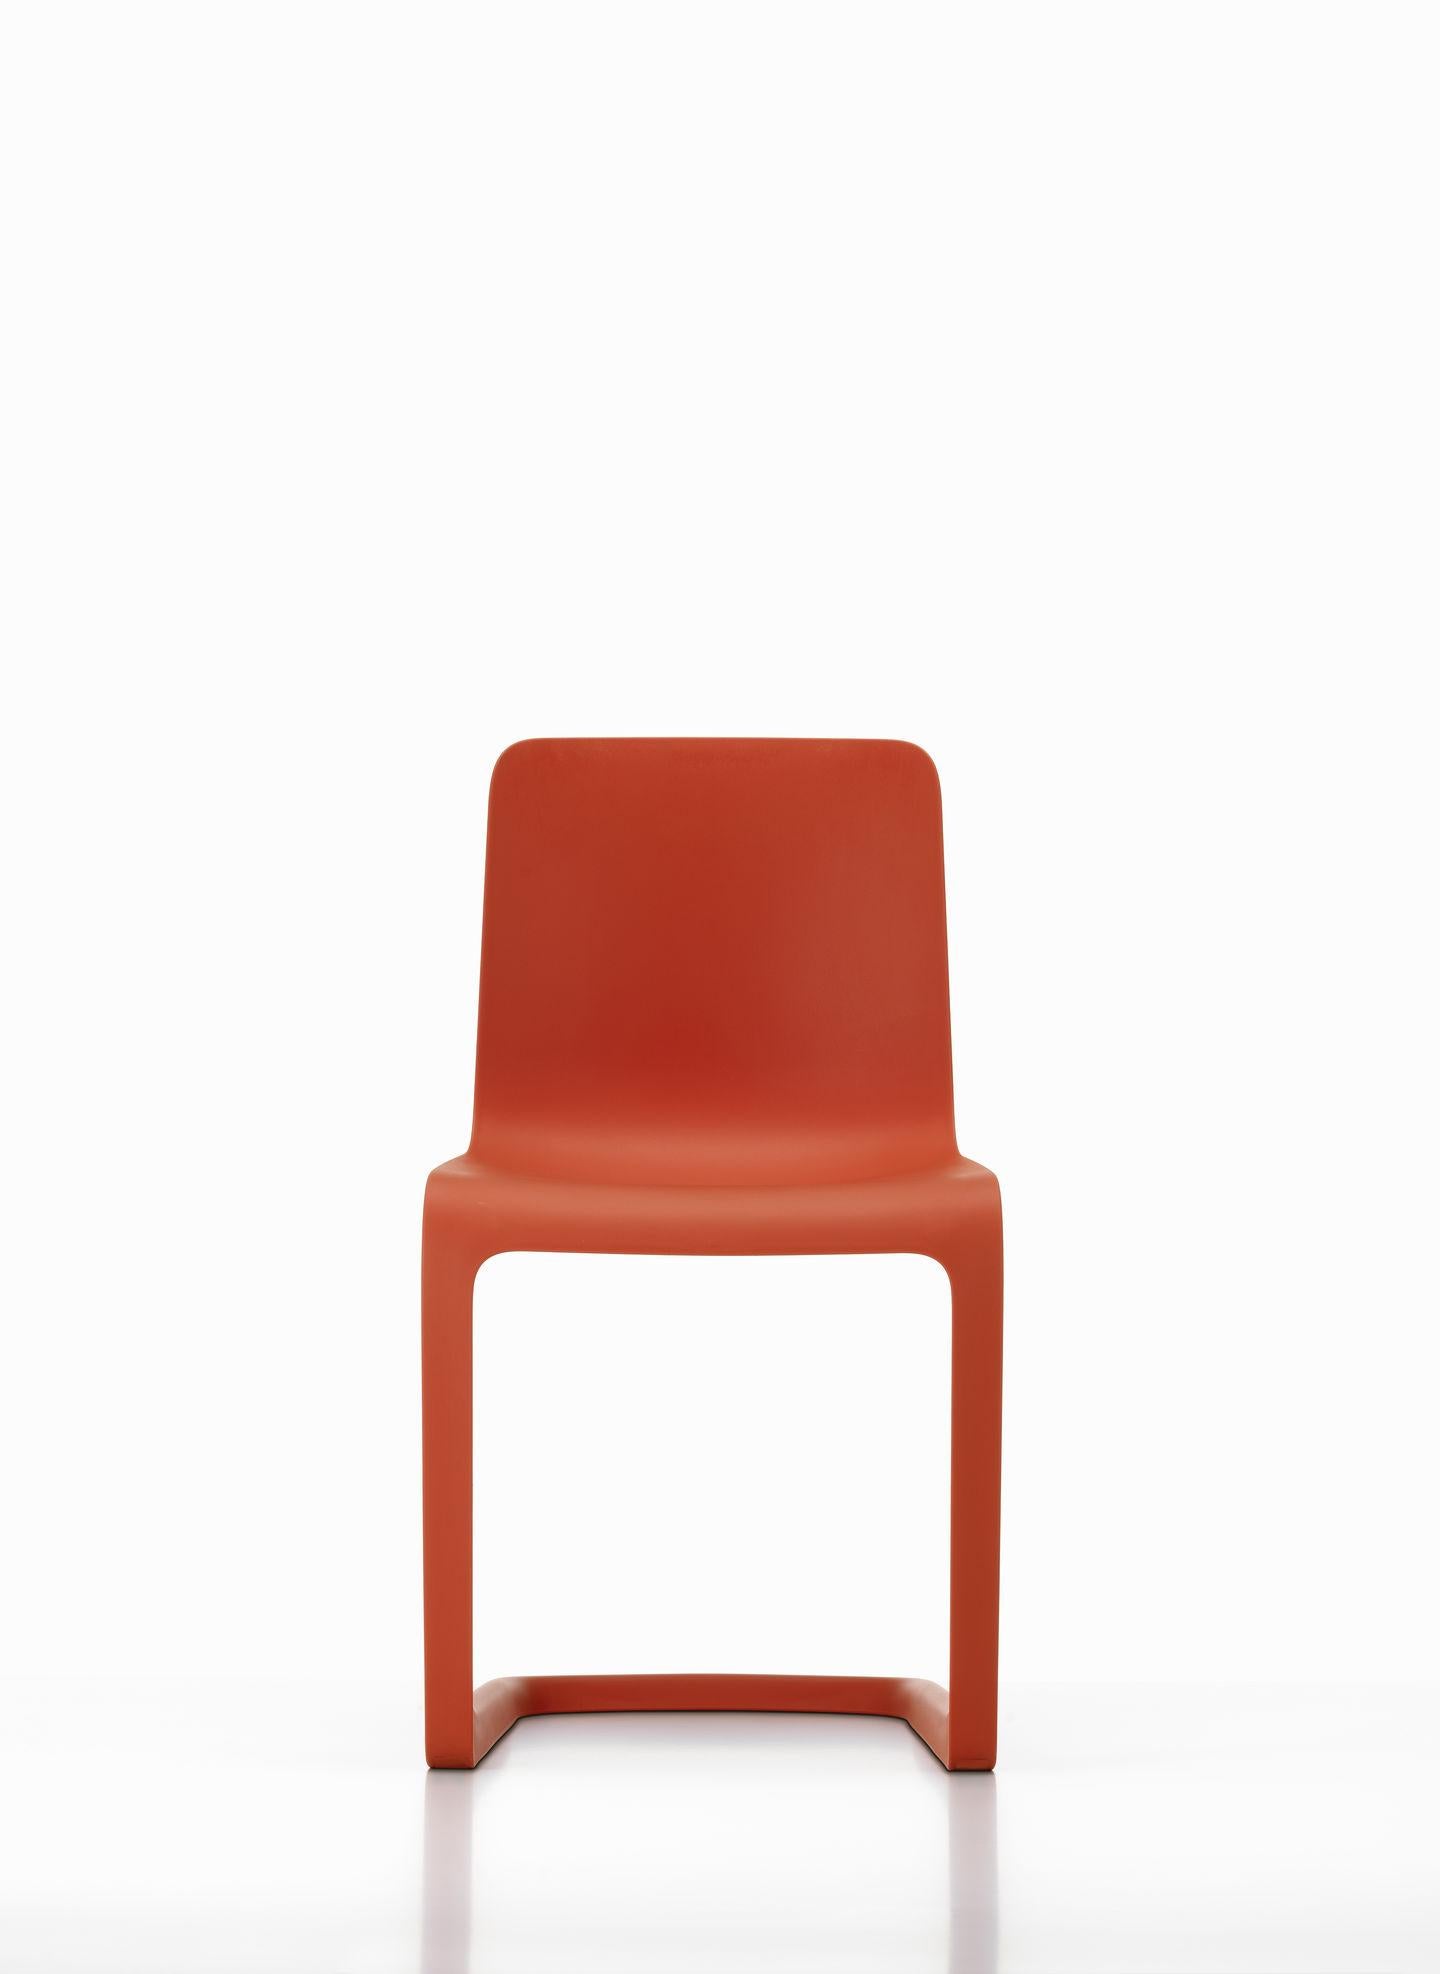 Swiss Set of Six EVO-C Chair in Recyclable Polypropylene by Jasper Morrison